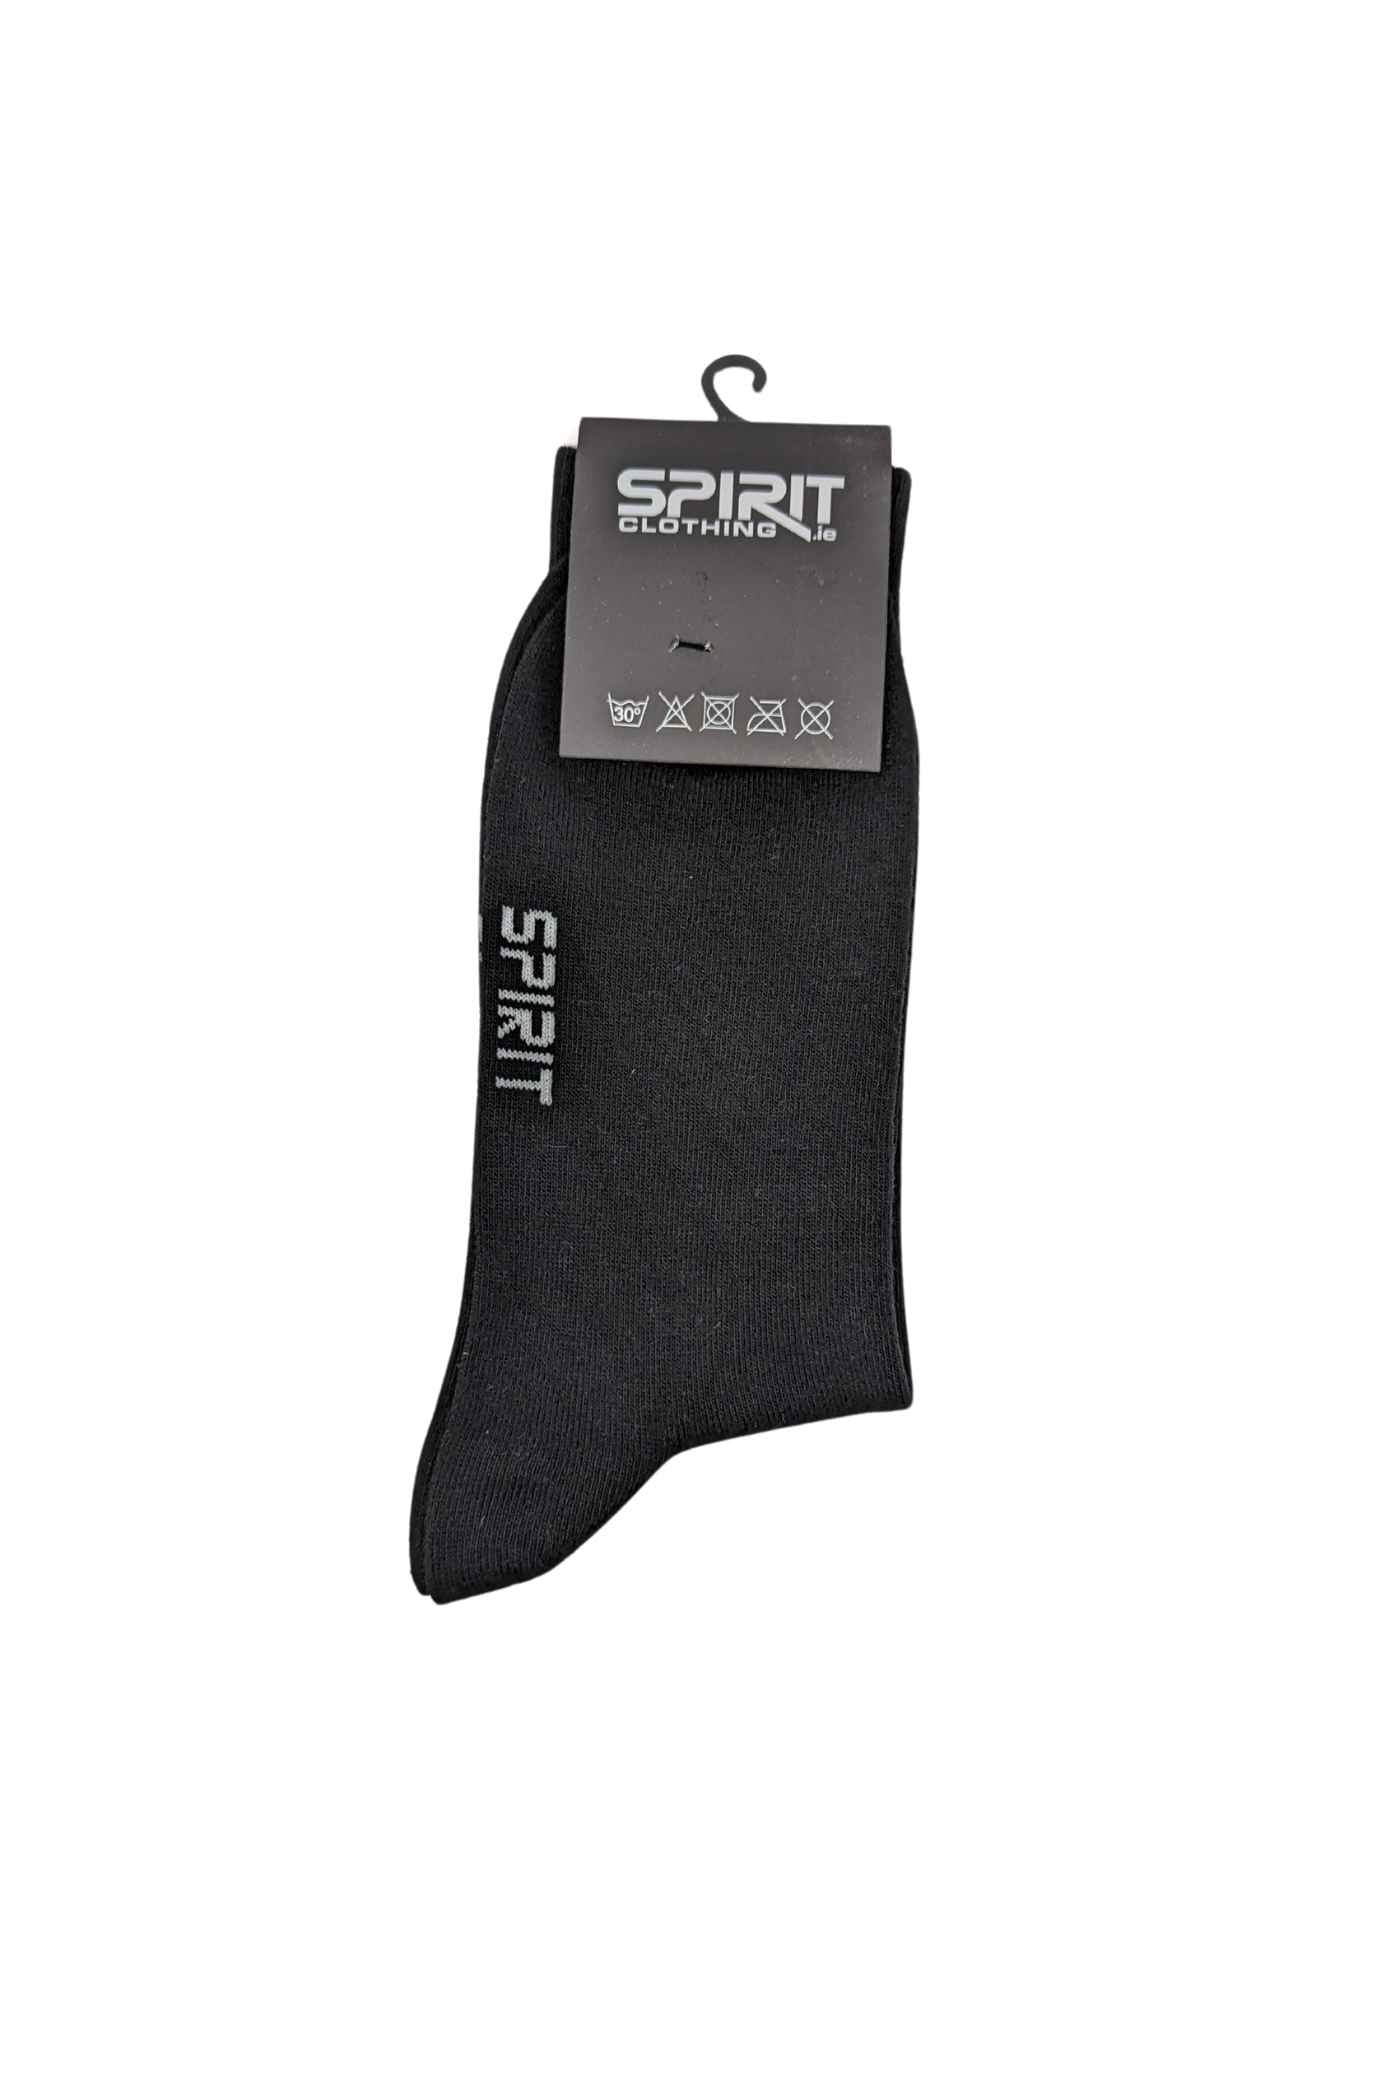 Spirit Mens Black Socks-Back